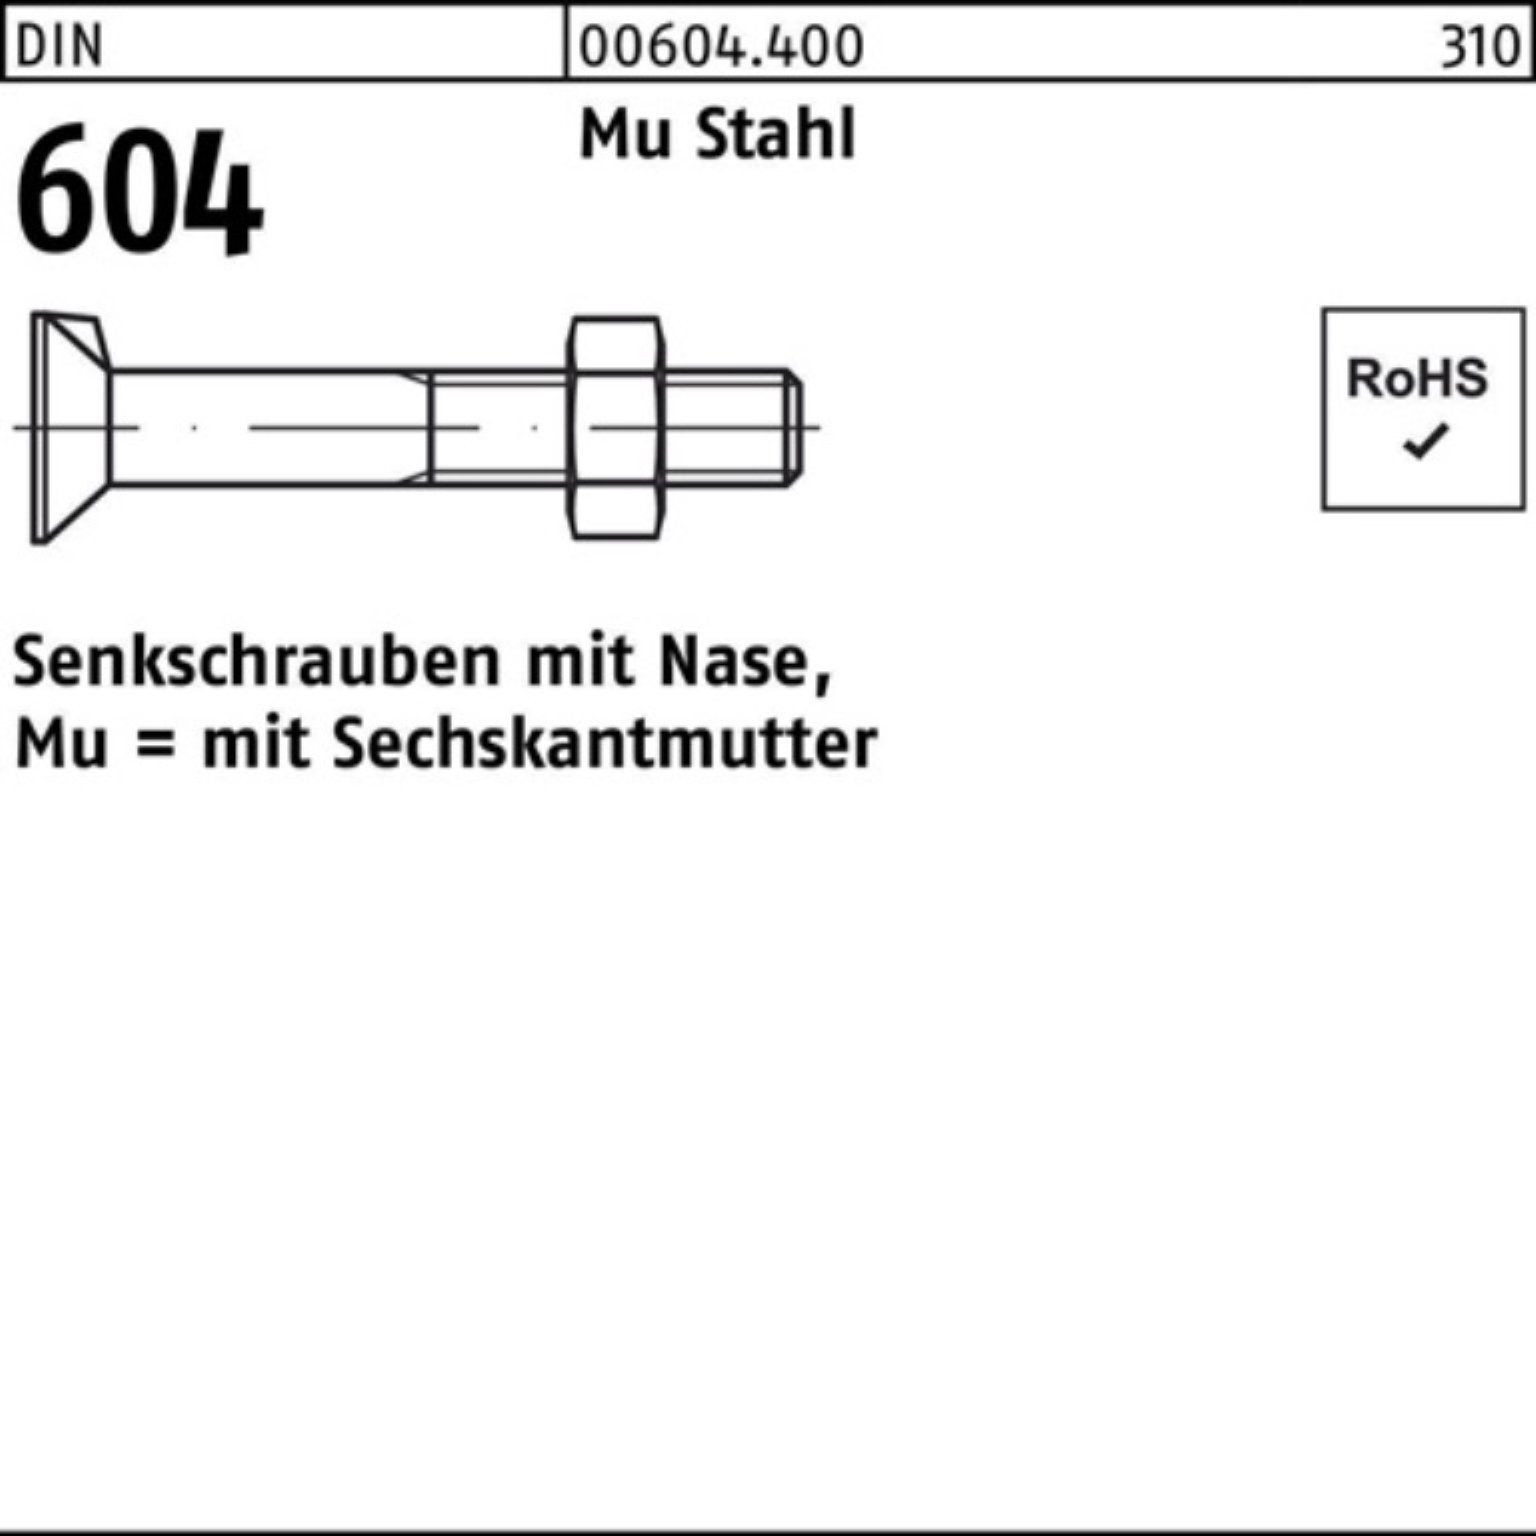 60 100er Pack Stahl Nase/6-ktmutter 4.6 M24x 2 Senkschraube Senkschraube Reyher DIN 604 Mu